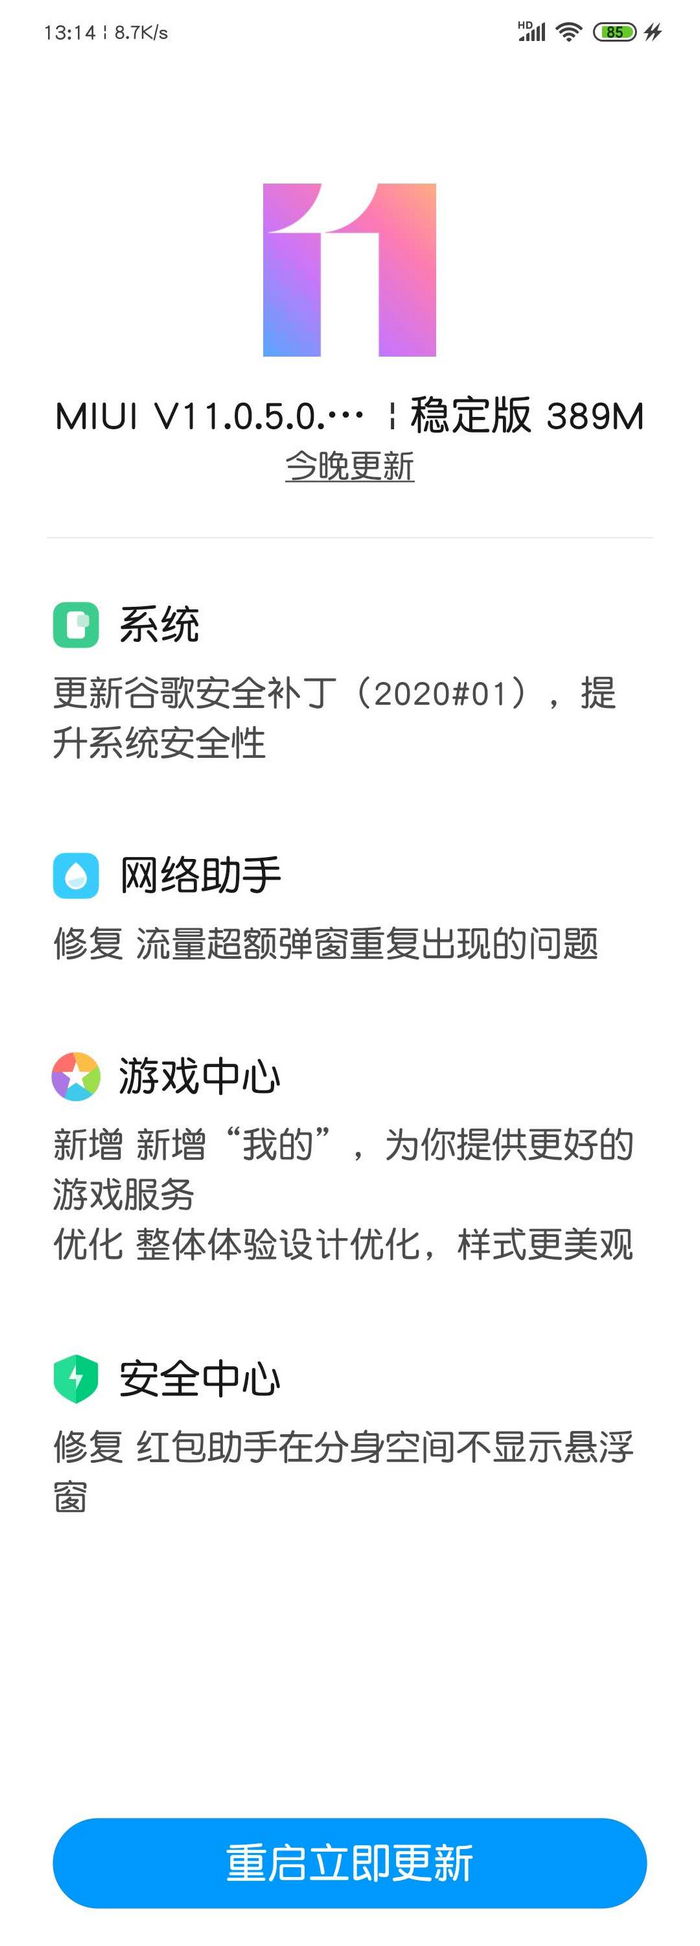 橡果国际智能手机，红米 Redmi Note 8 获 MIUI V11.35.0 稳定版更新